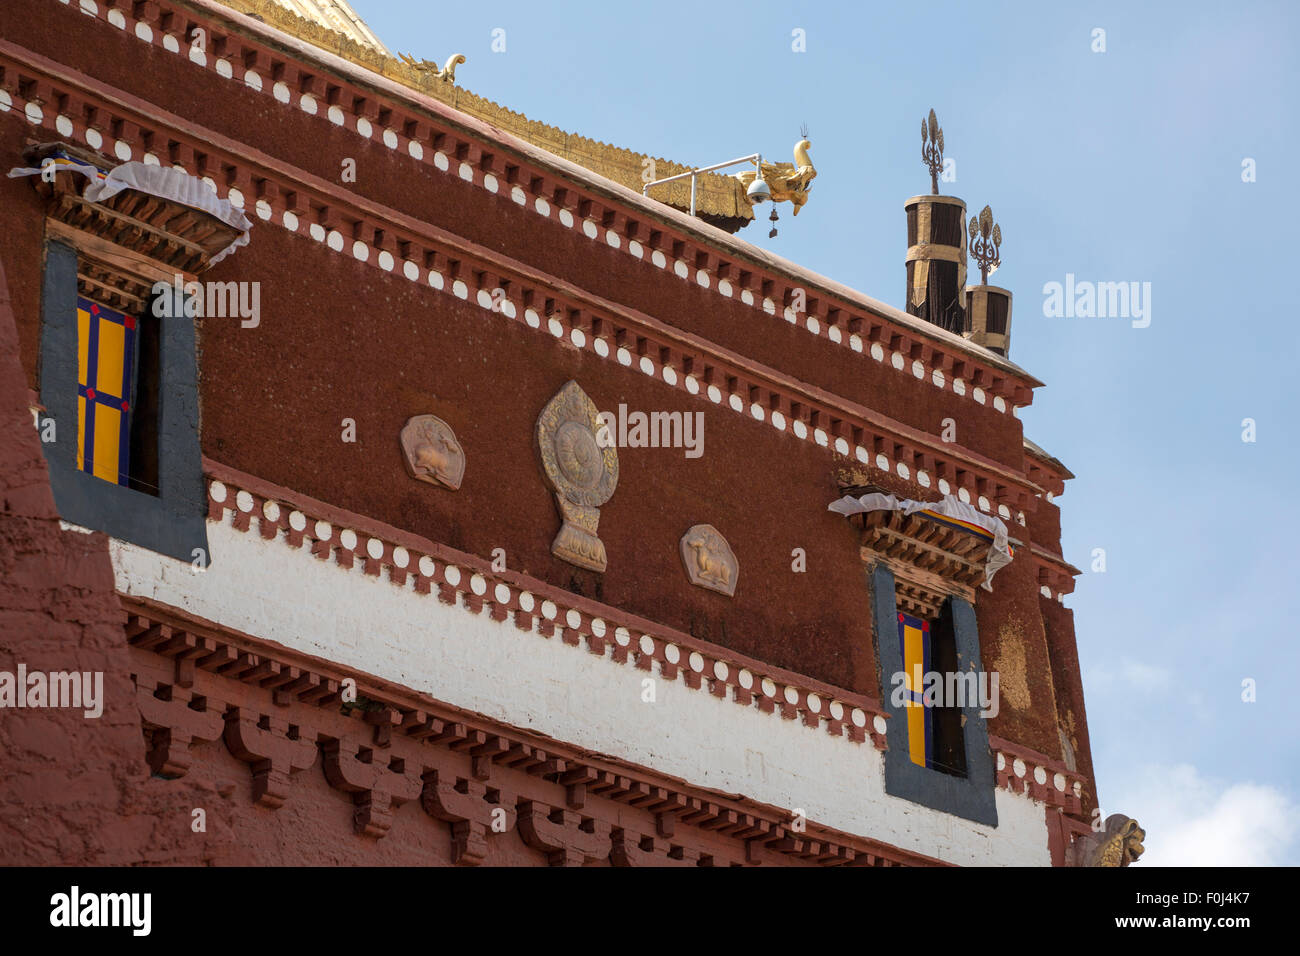 Détail du Palais du Potala à Lhassa. Maison historique du dalaï-lama. Site du patrimoine mondial de l'UNESCO. Chine 2013 Banque D'Images